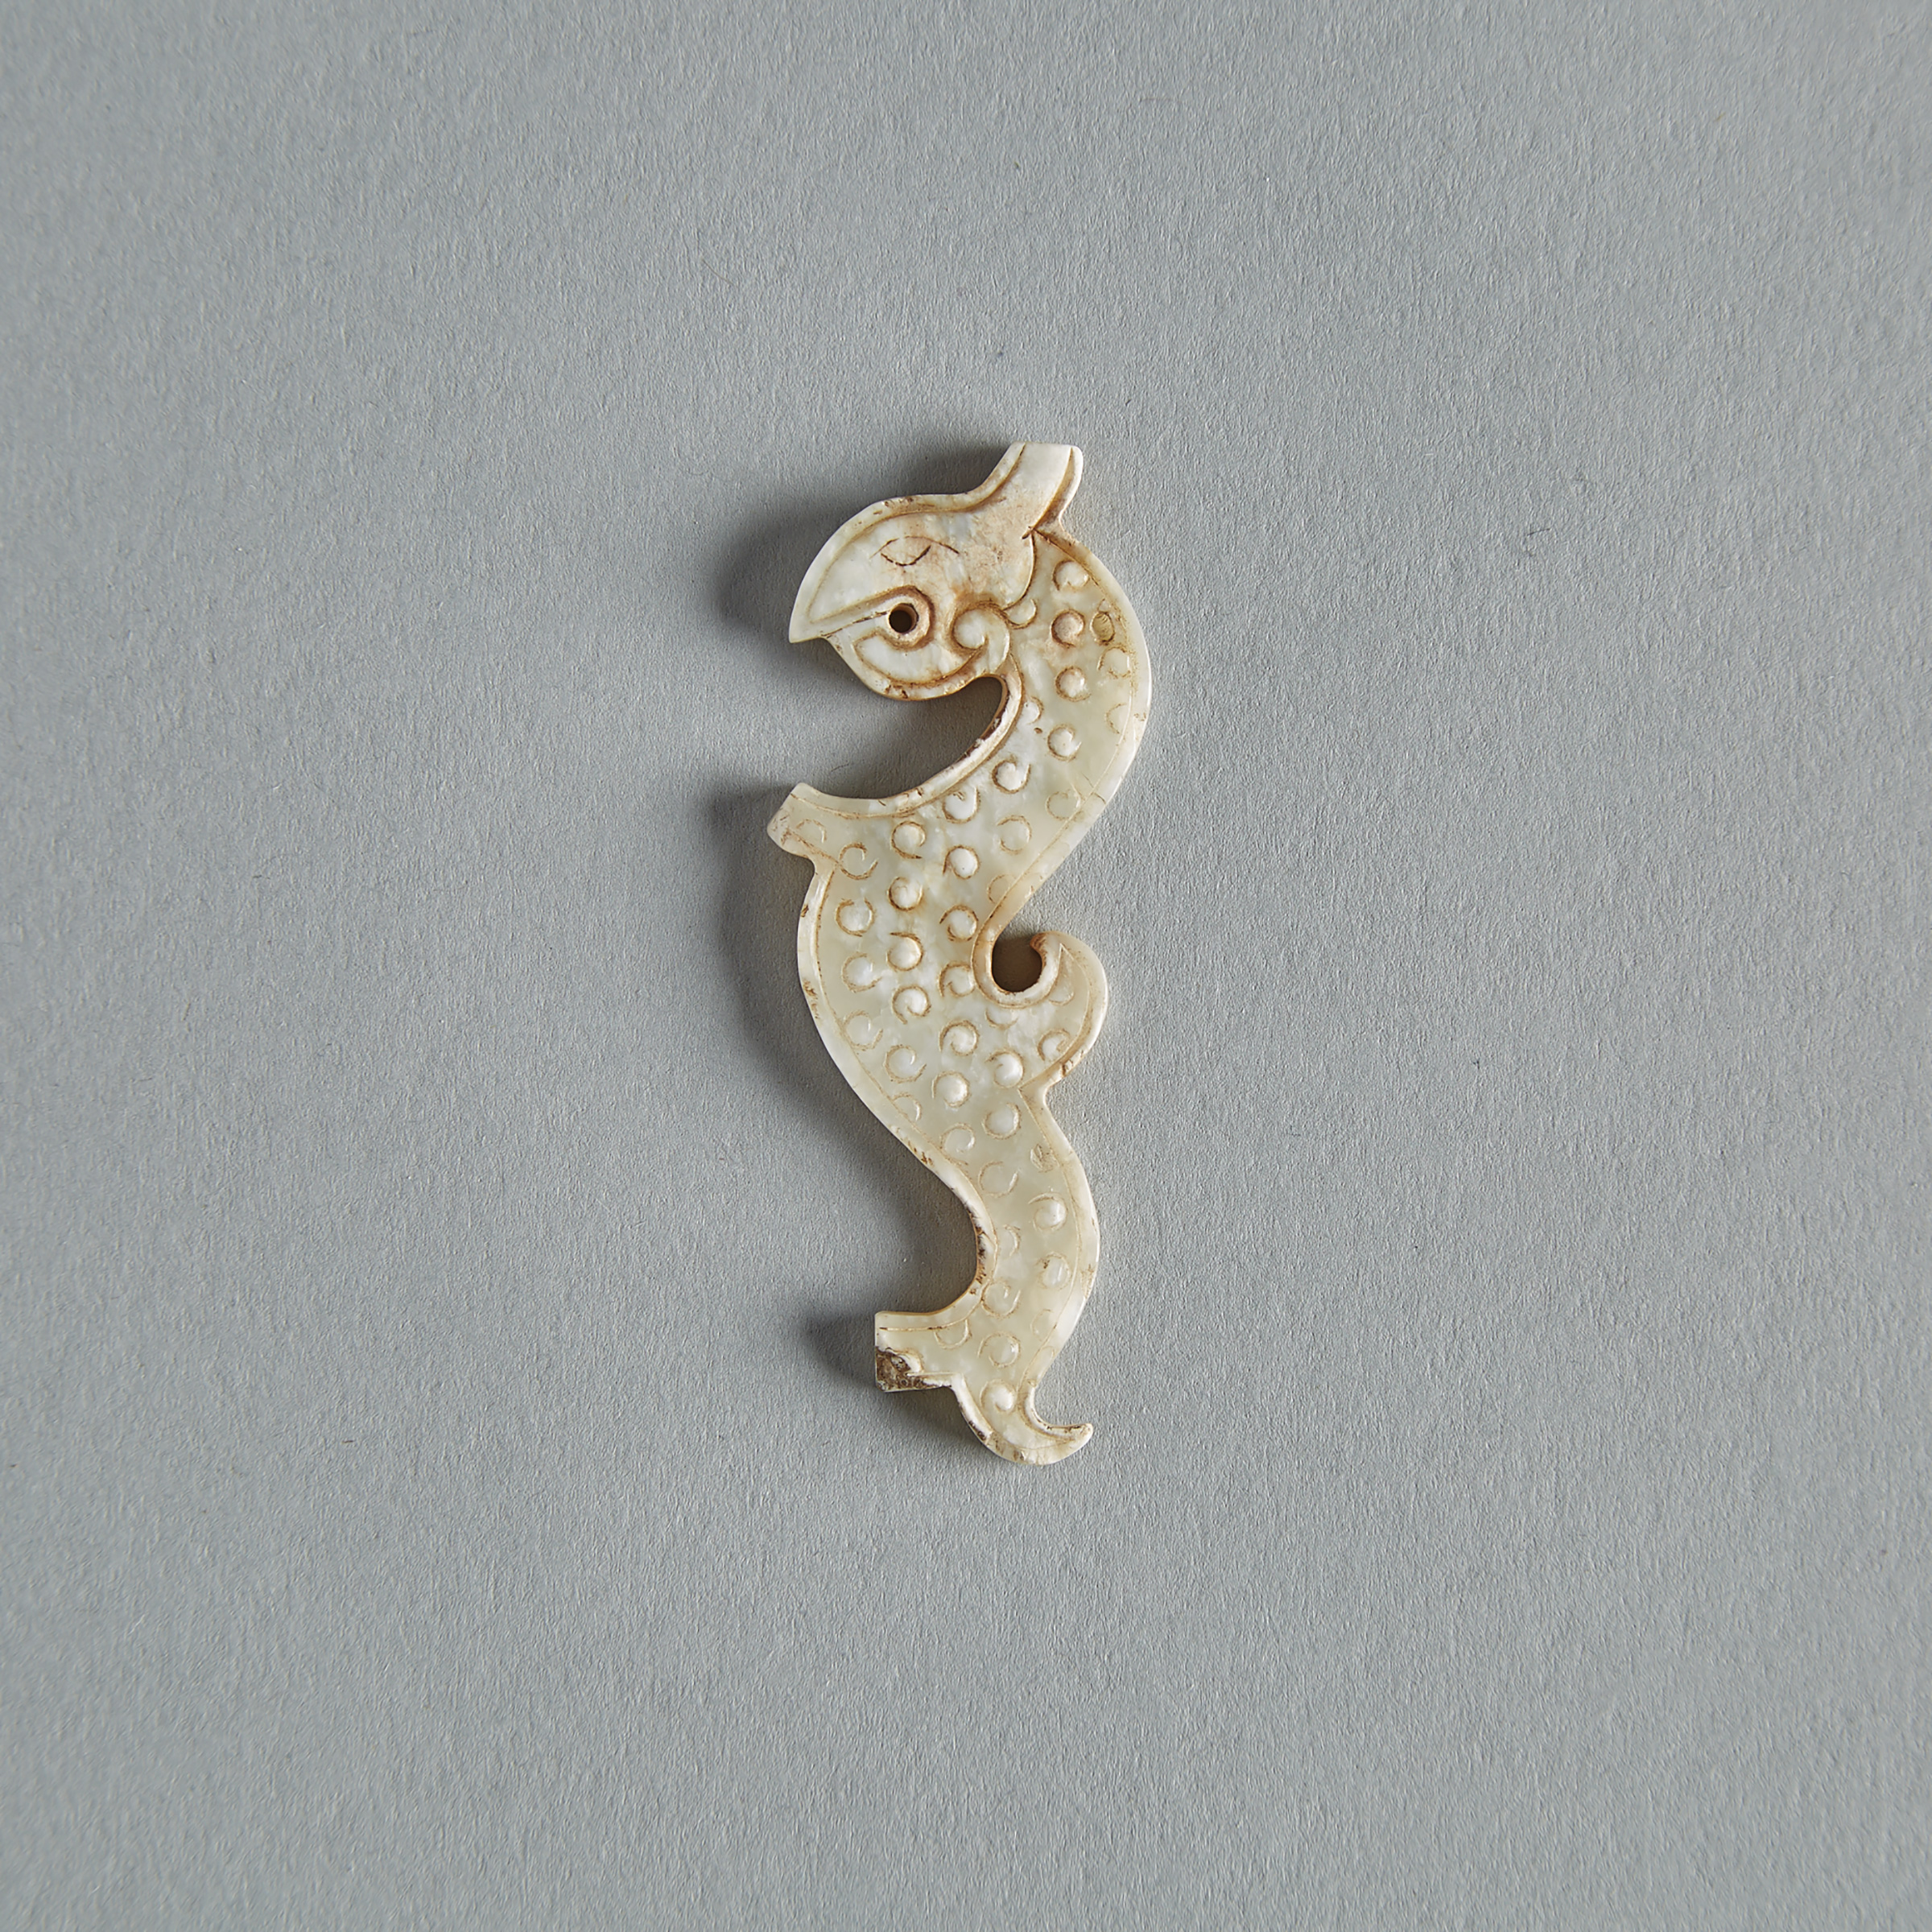 An Archaic Jade Dragon Pendant, Zhou Dynasty